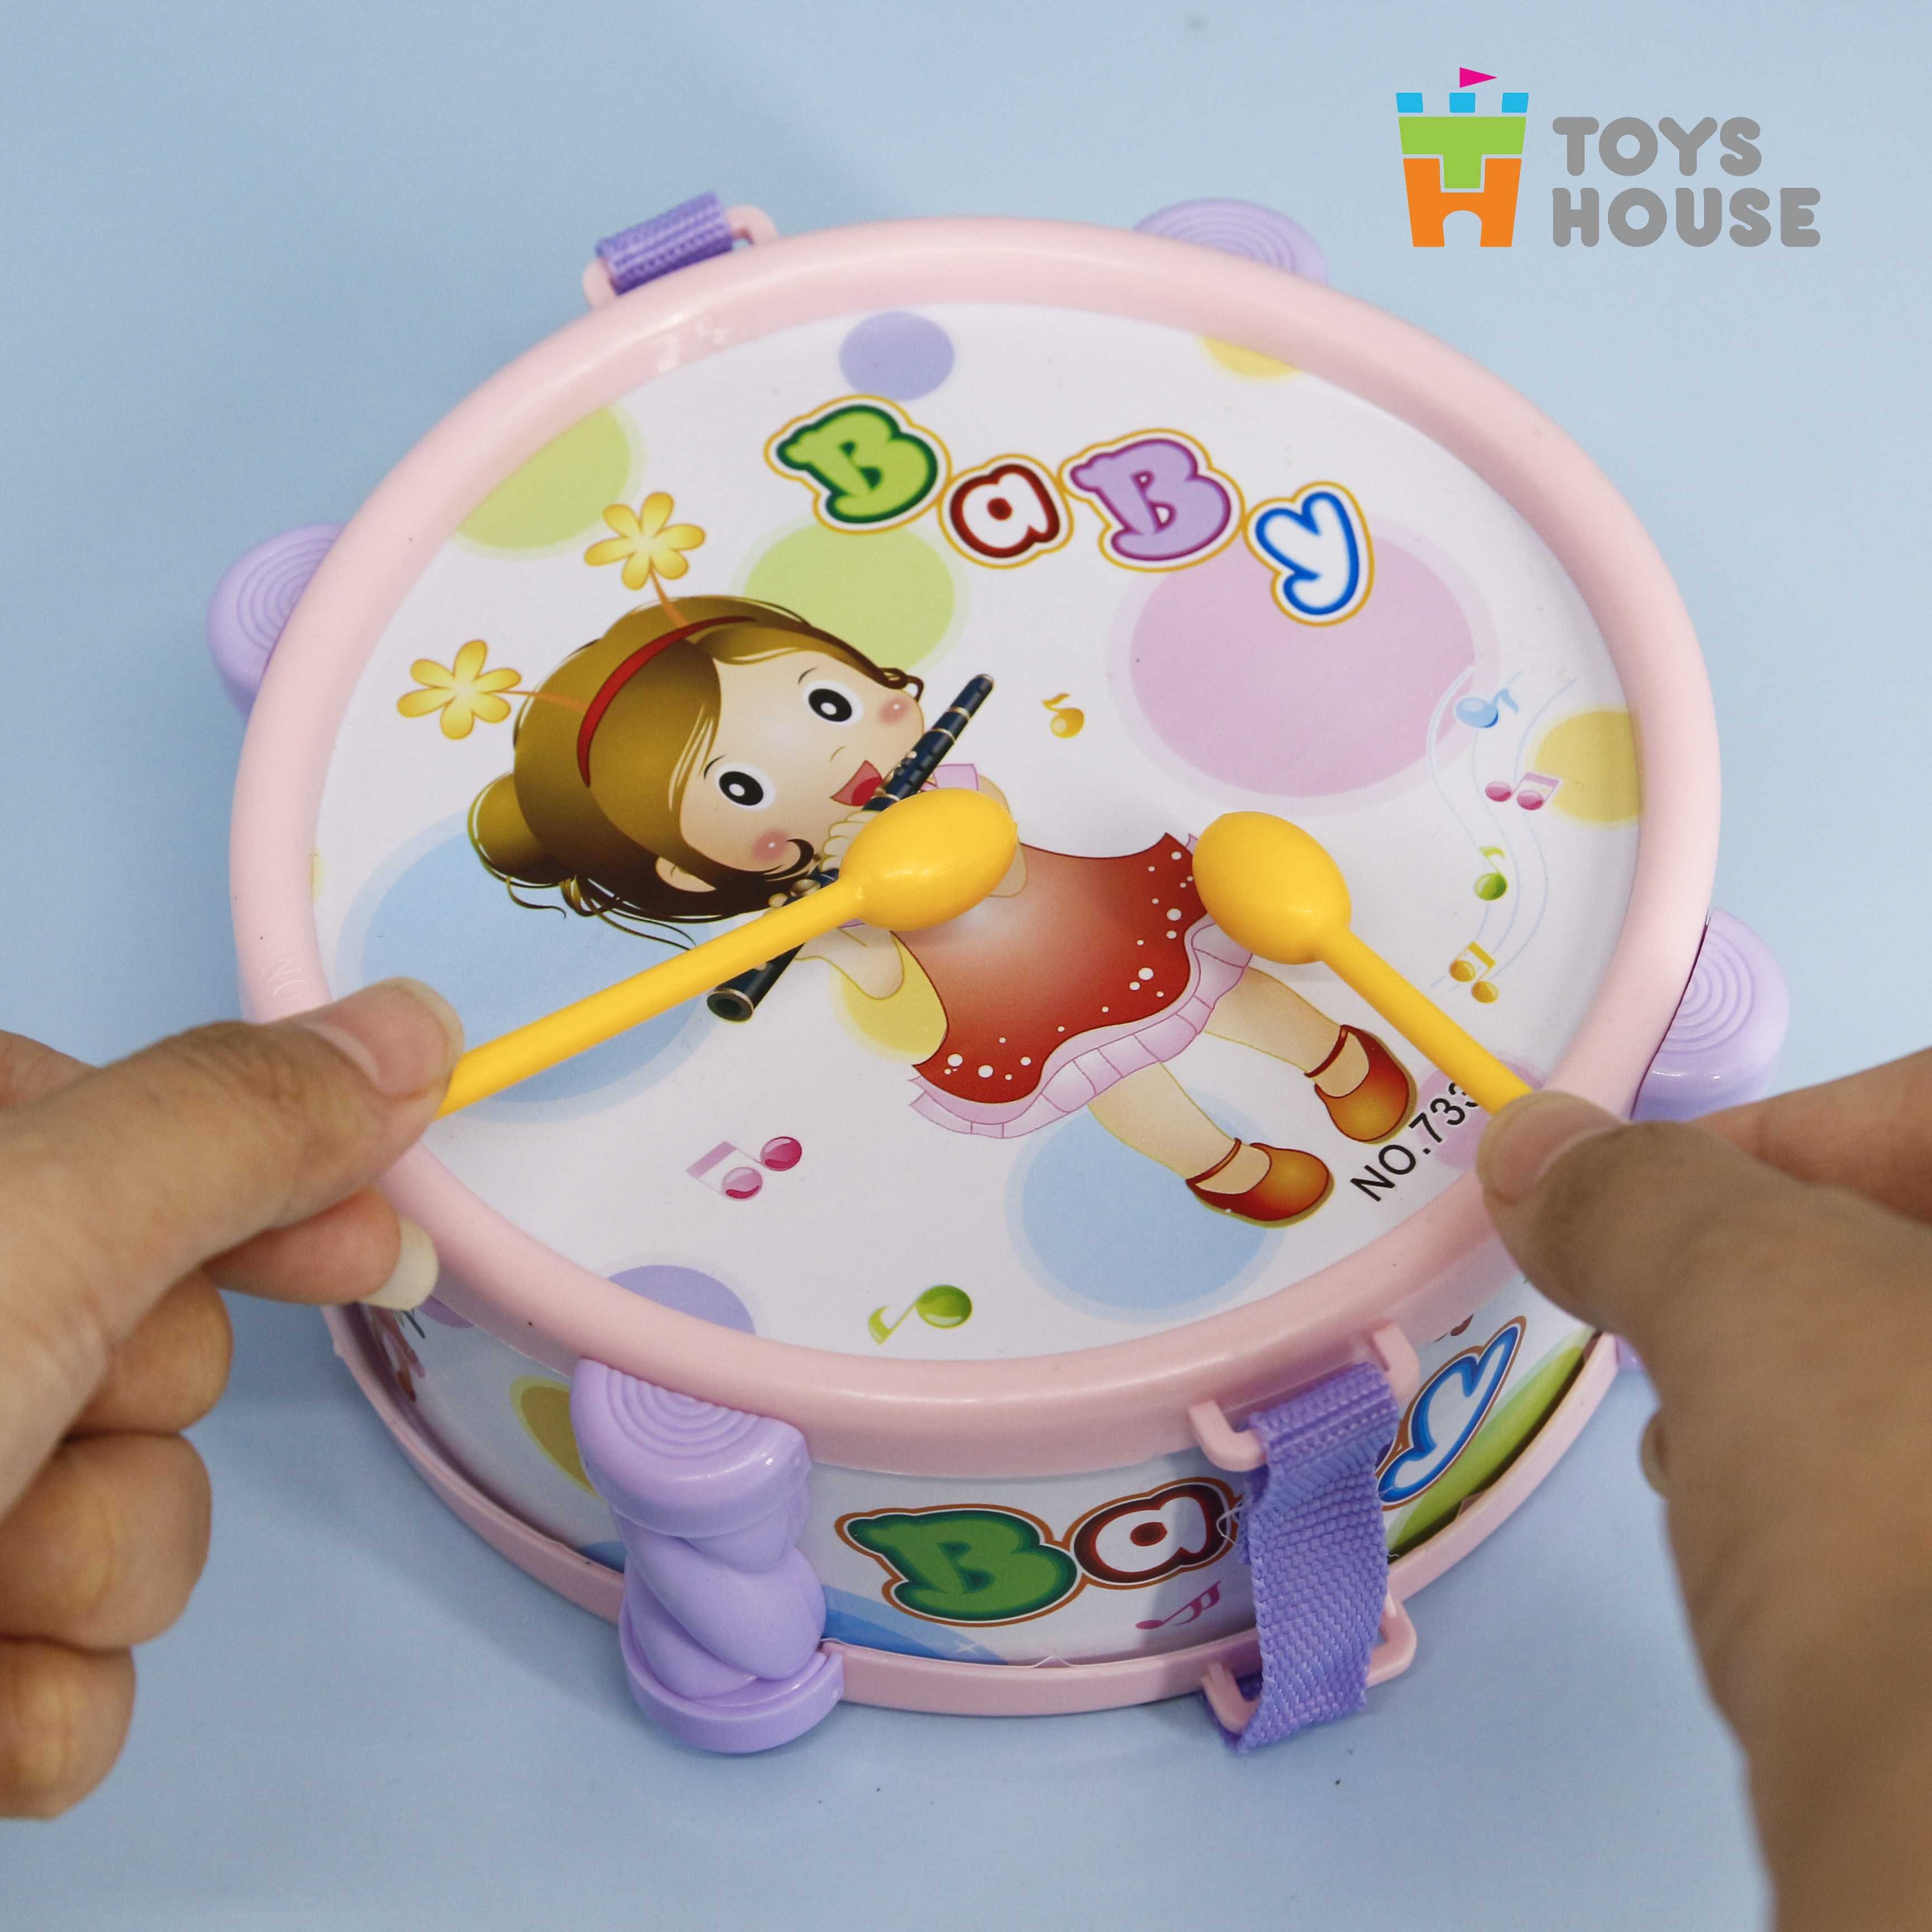 set đồ chơi xúc xắc, lục lạc, kèn, trống toyshouse dành cho bé từ sơ sinh 733 - giúp bé phát triển thị giác, thính giác 3